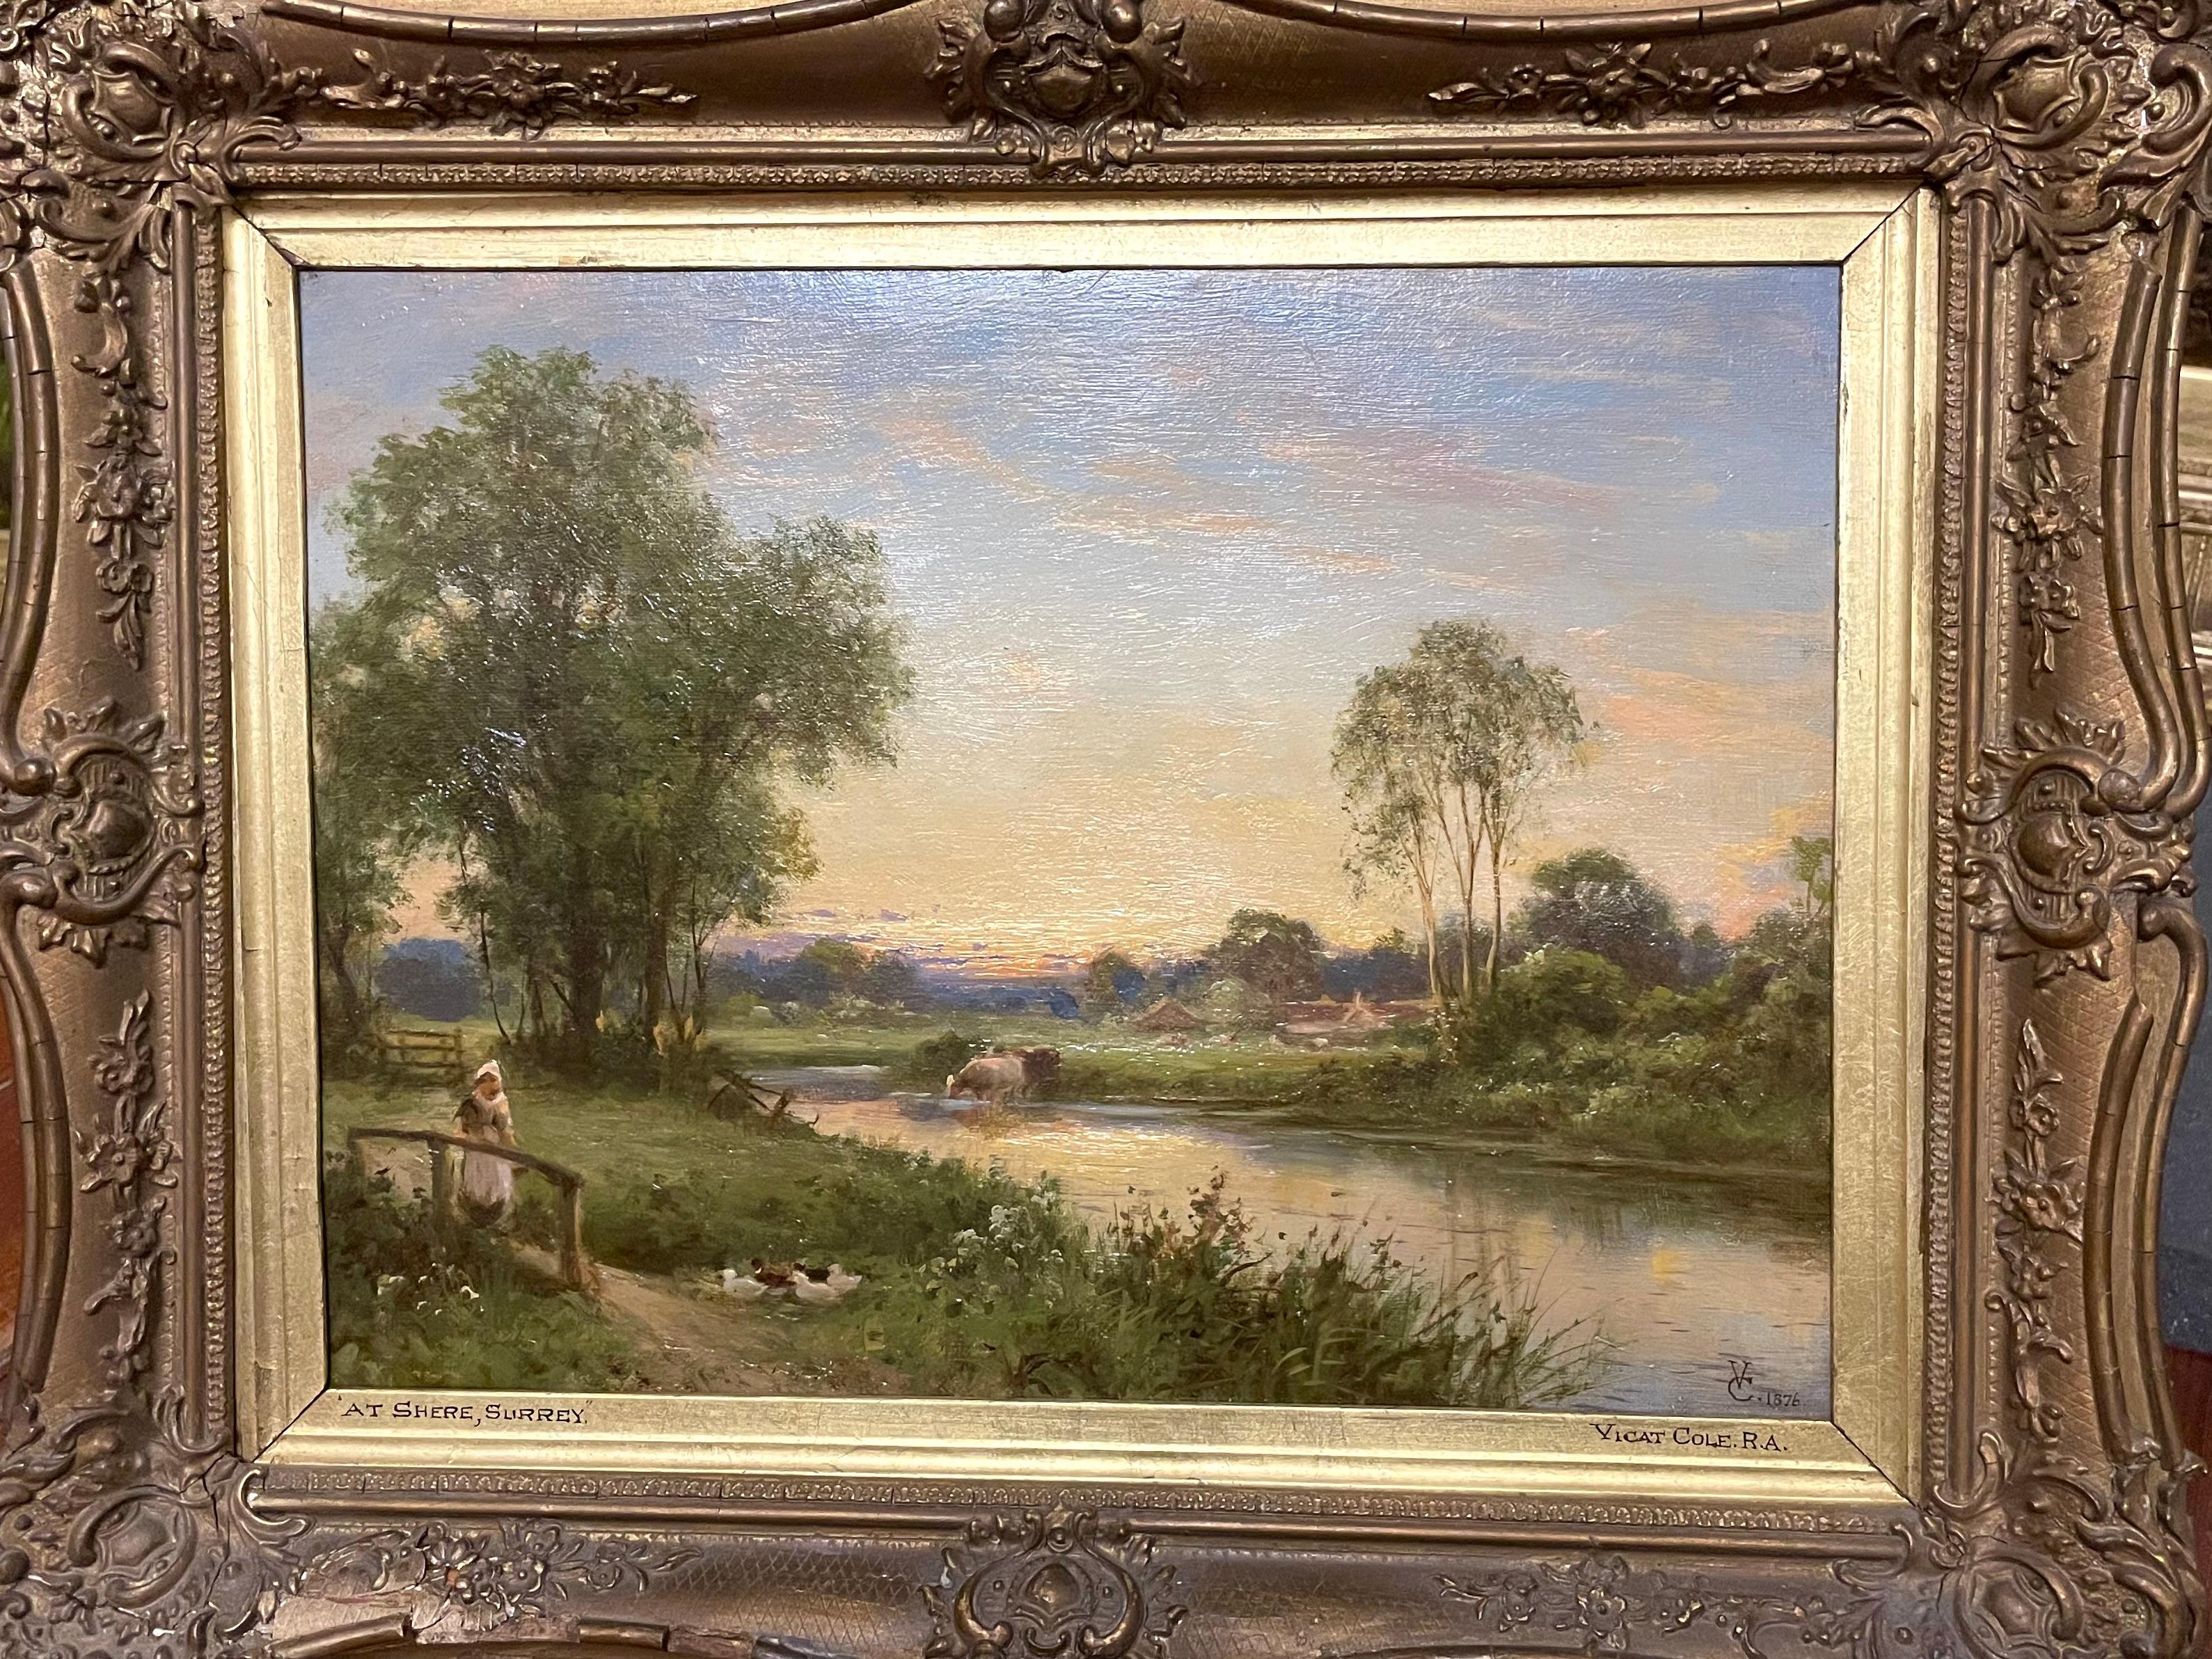 Landscape Painting George Vicat Cole RA - Shere, Surrey, huile sur toile, paysage, 19e siècle